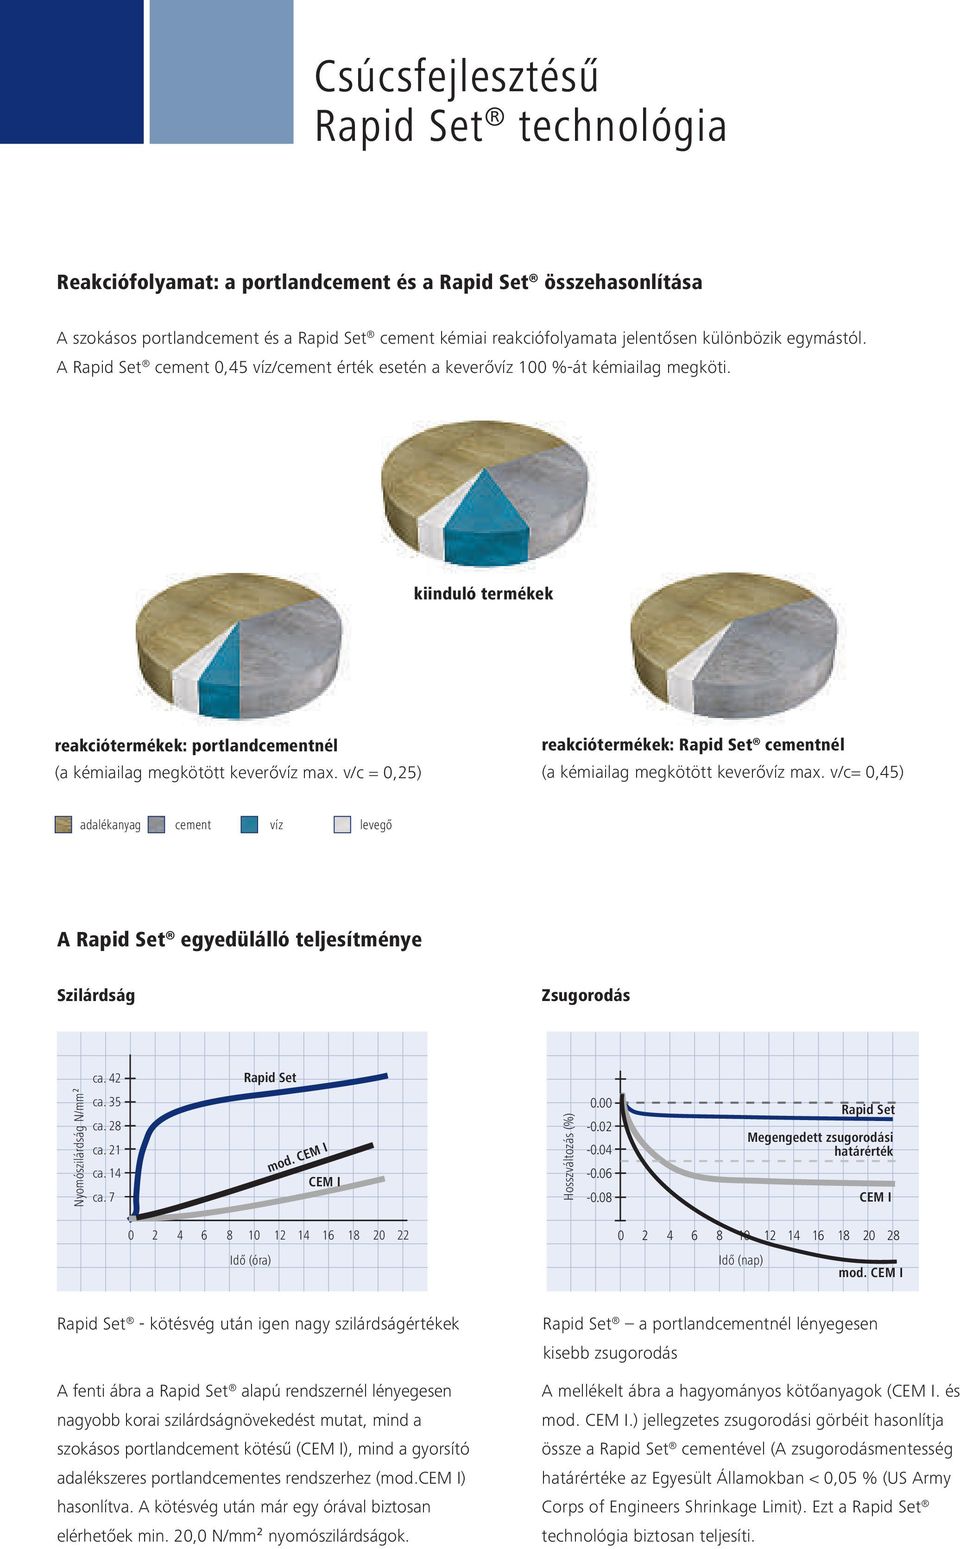 v/c = 0,25) reakciótermékek: Rapid Set cementnél (a kémiailag megkötött keverővíz max. v/c= 0,45) adalékanyag cement víz levegő A Rapid Set egyedülálló teljesítménye Szilárdság Zsugorodás ca.